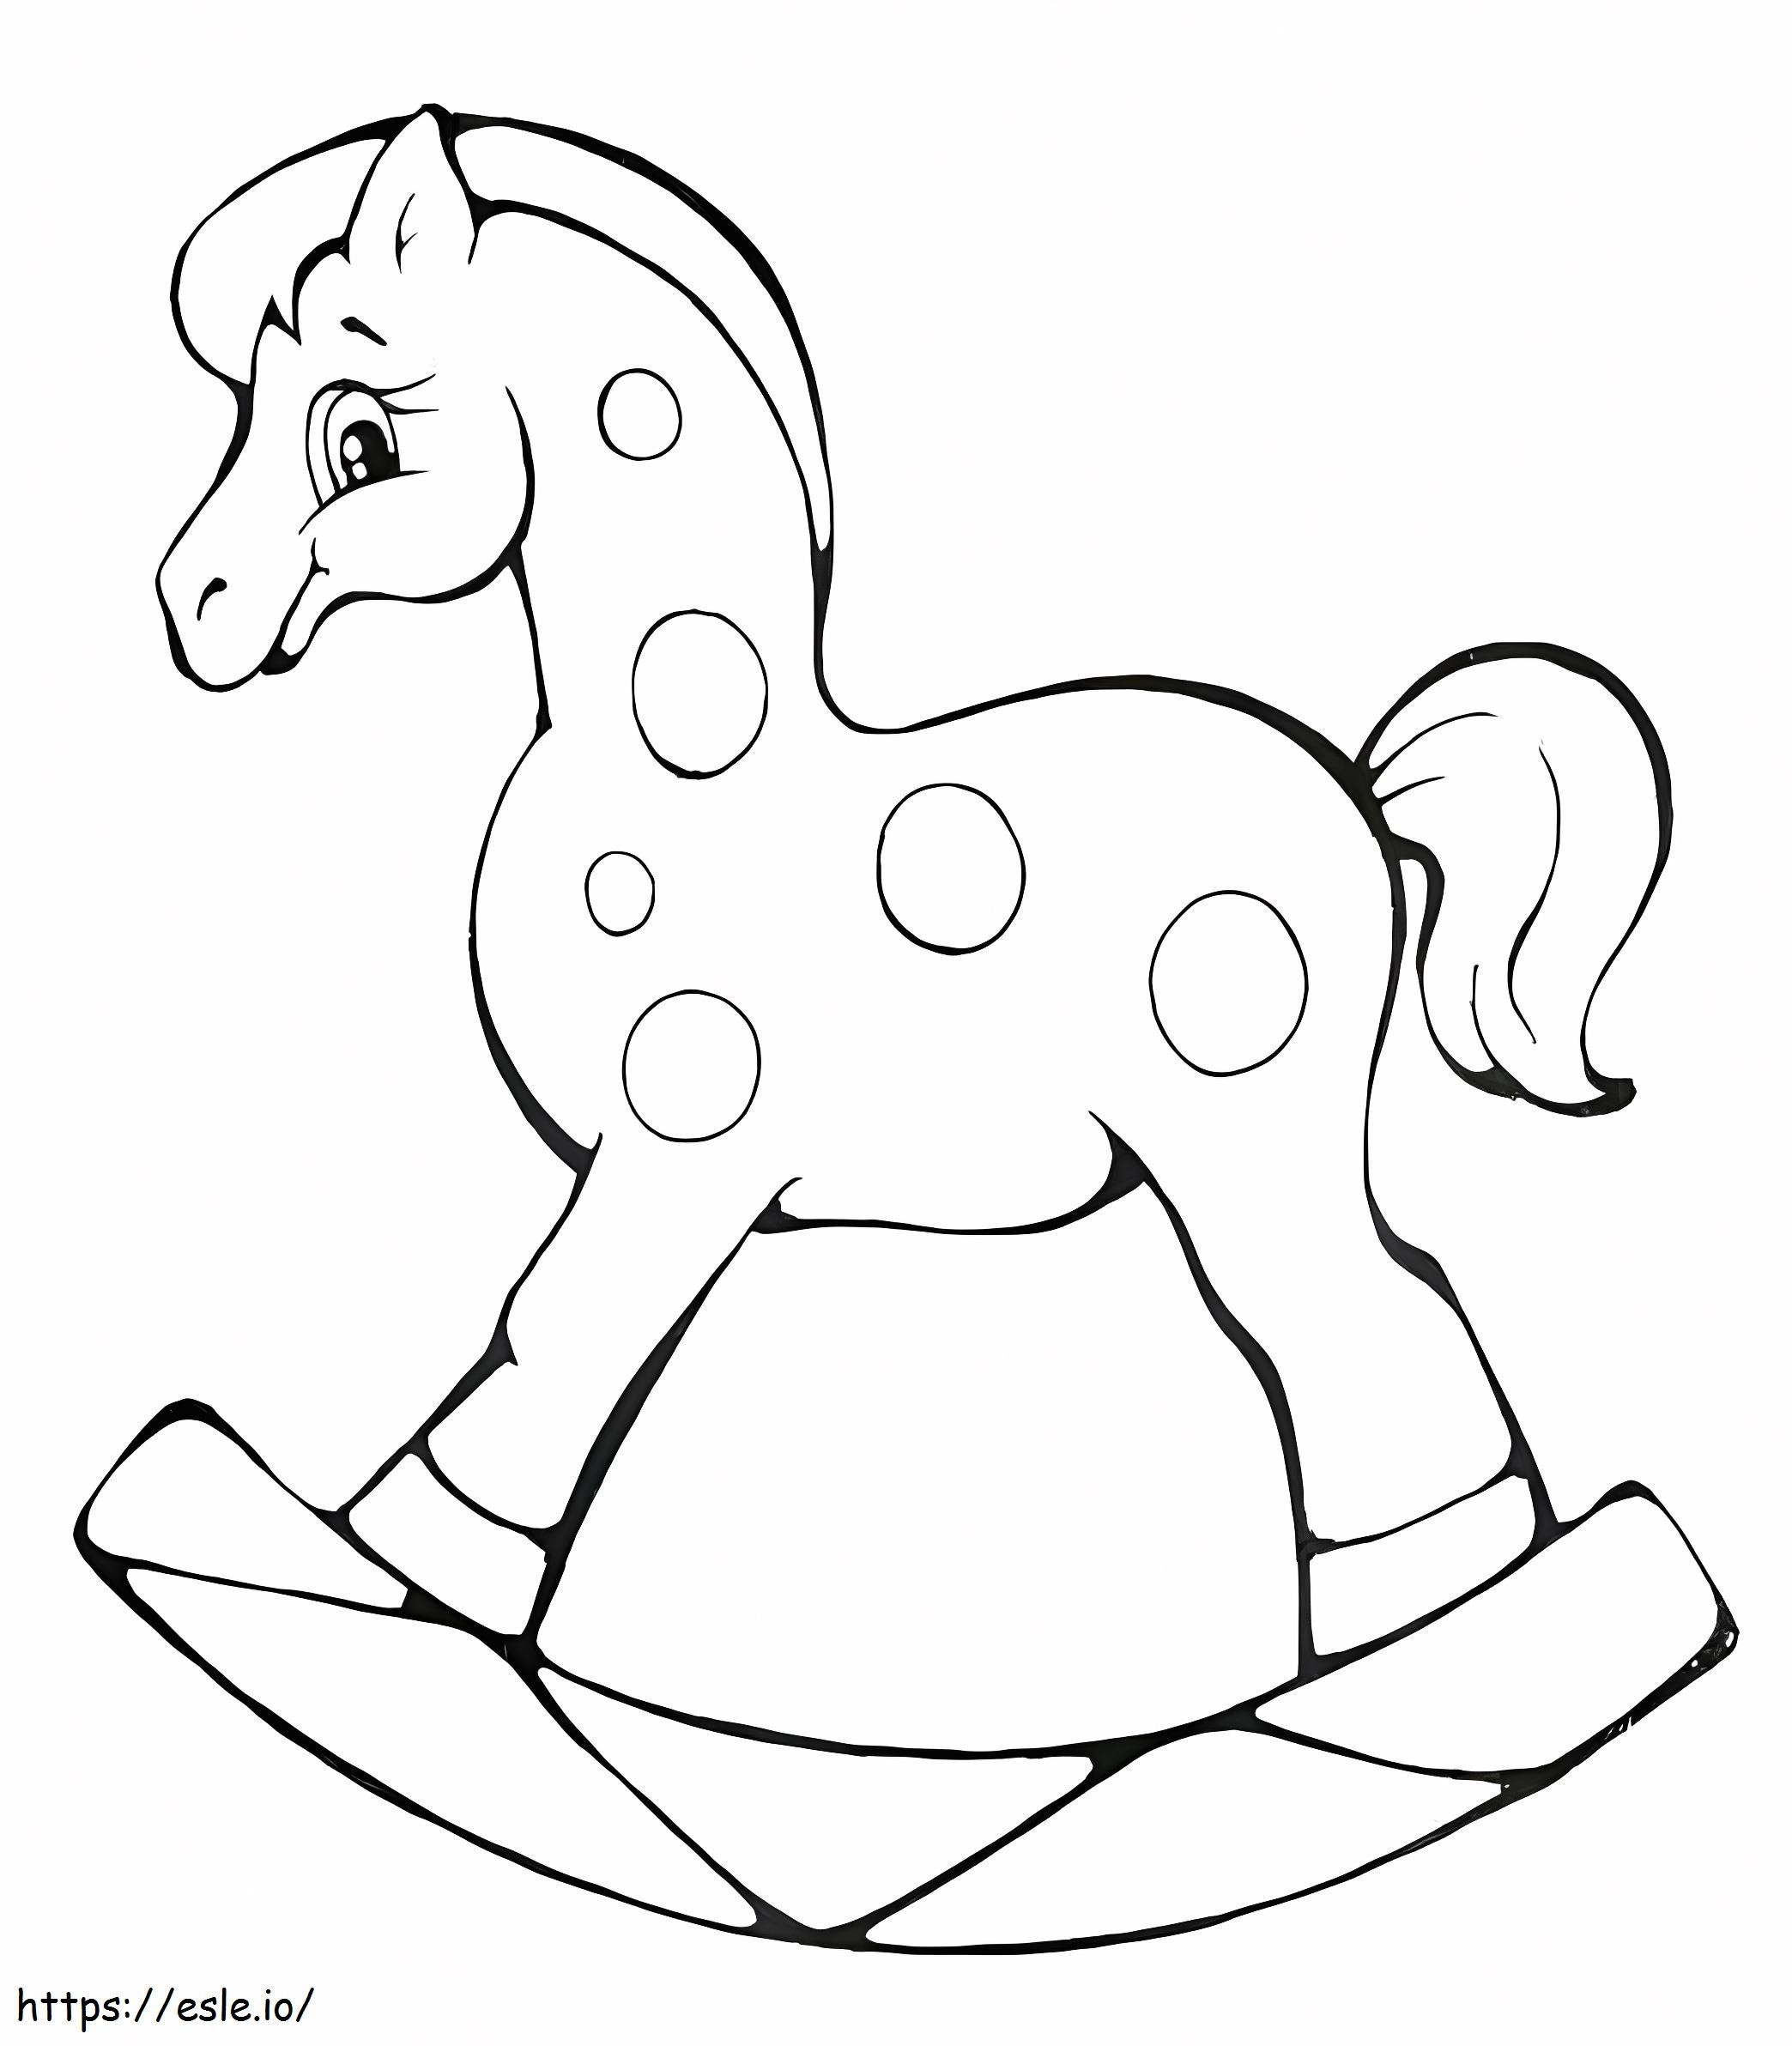 Cavalo de balanço para imprimir para colorir